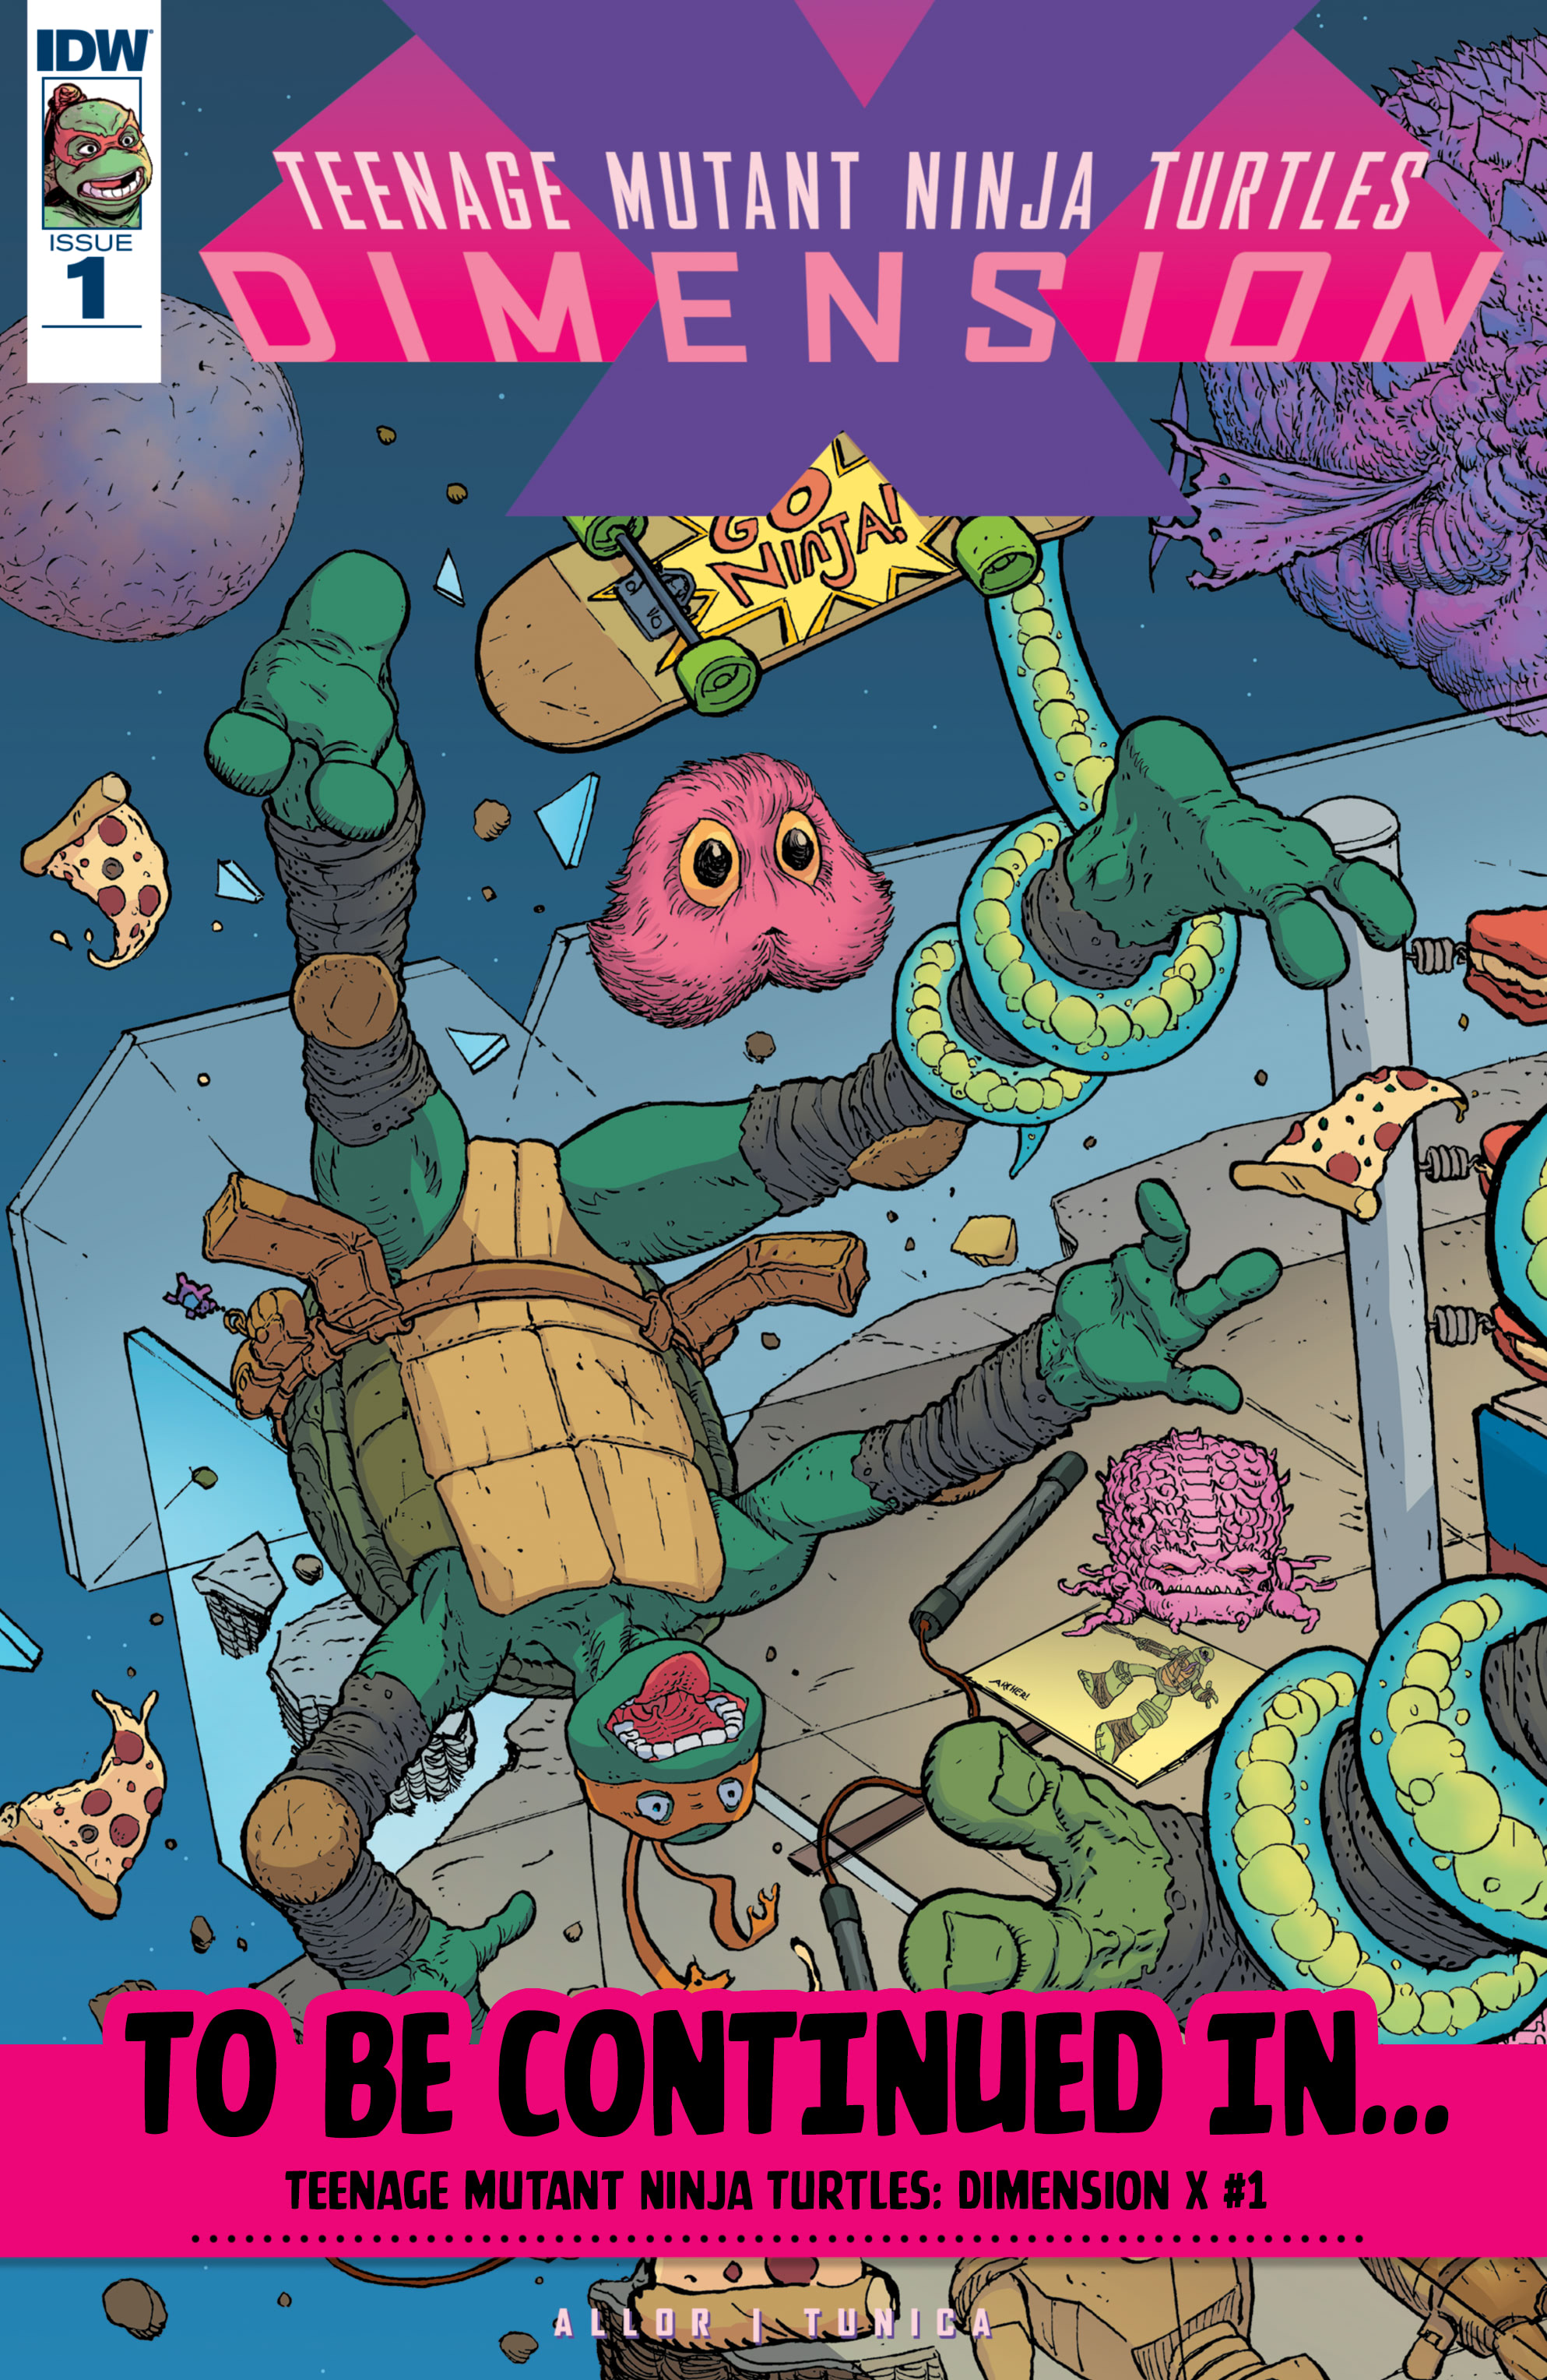 Read online Teenage Mutant Ninja Turtles: Urban Legends comic -  Issue #21 - 29